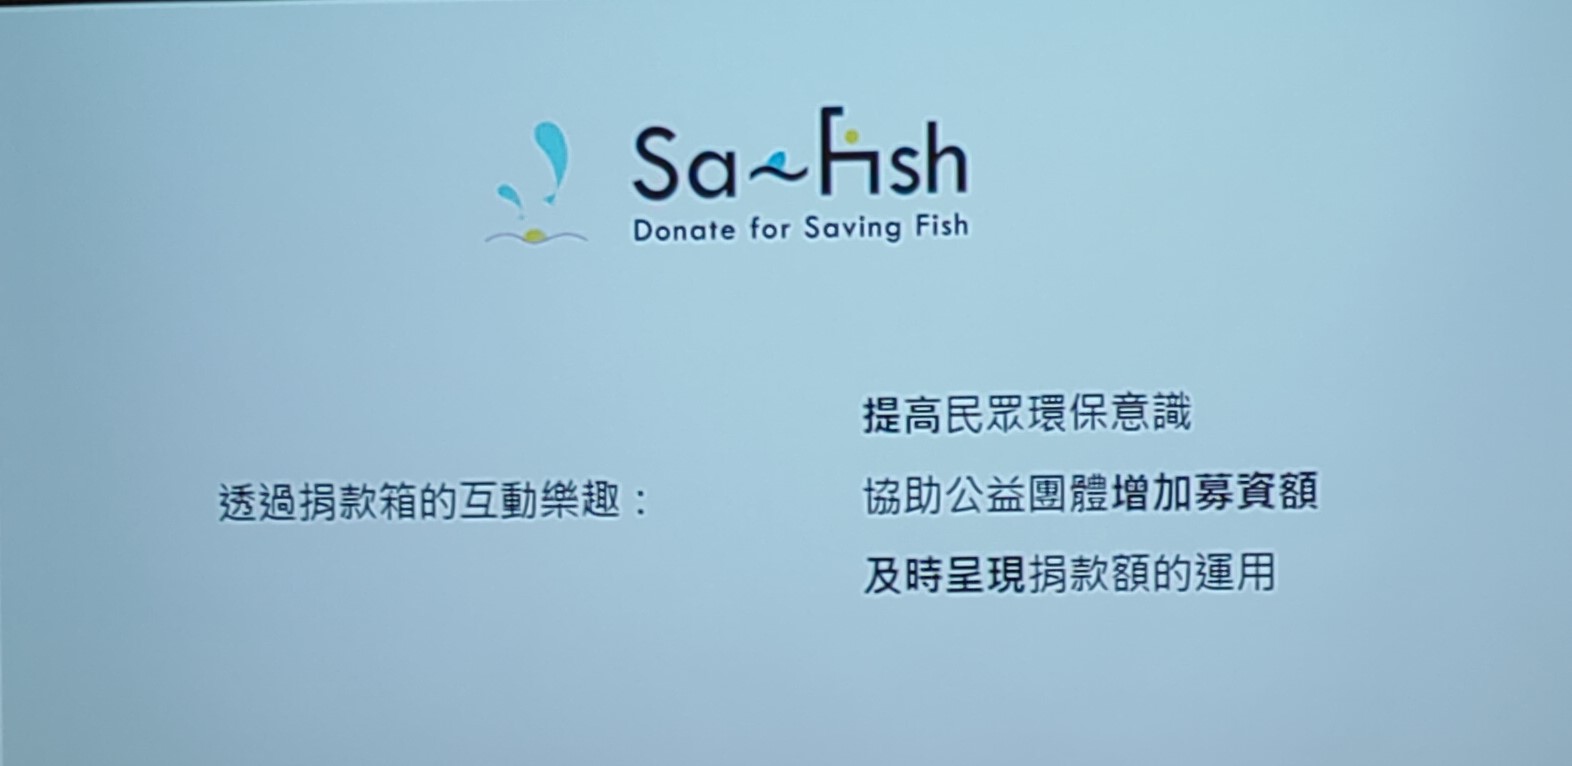 Sa-Fish-4.jpg